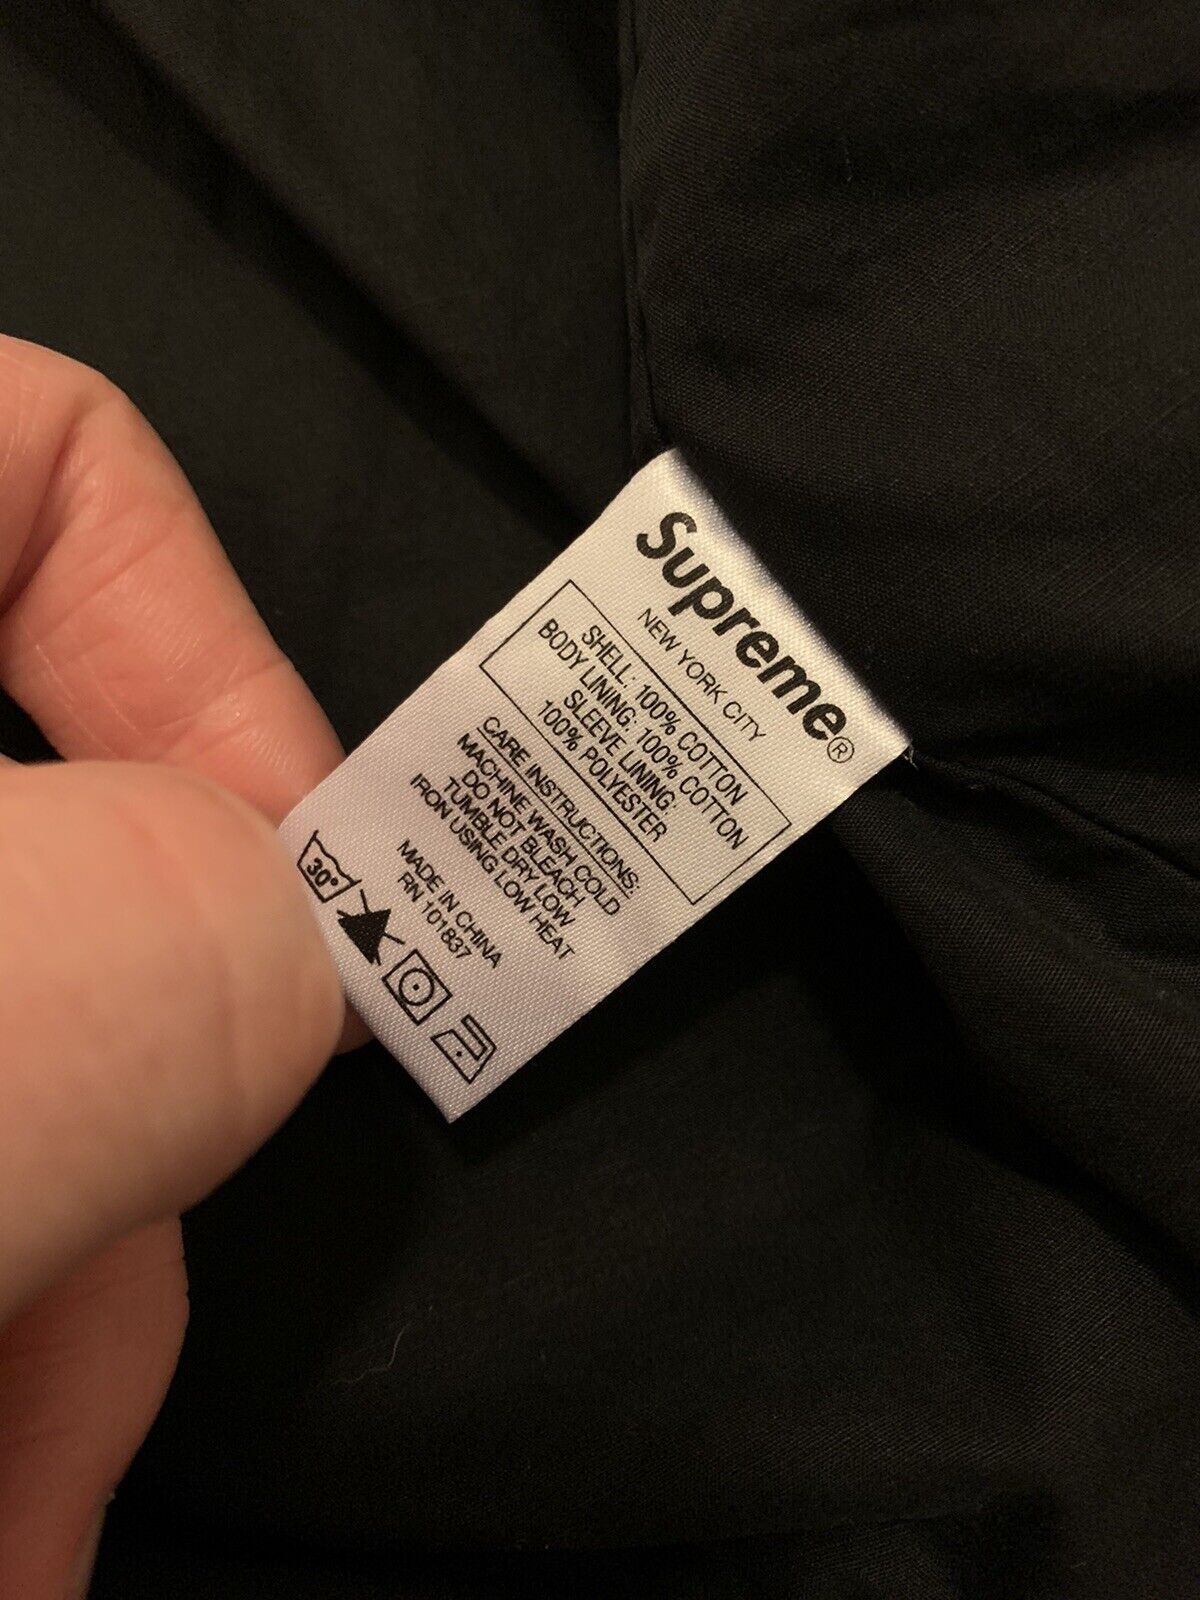 Supreme Bandana Track Jacket Black Size Extra Large Xl | eBay